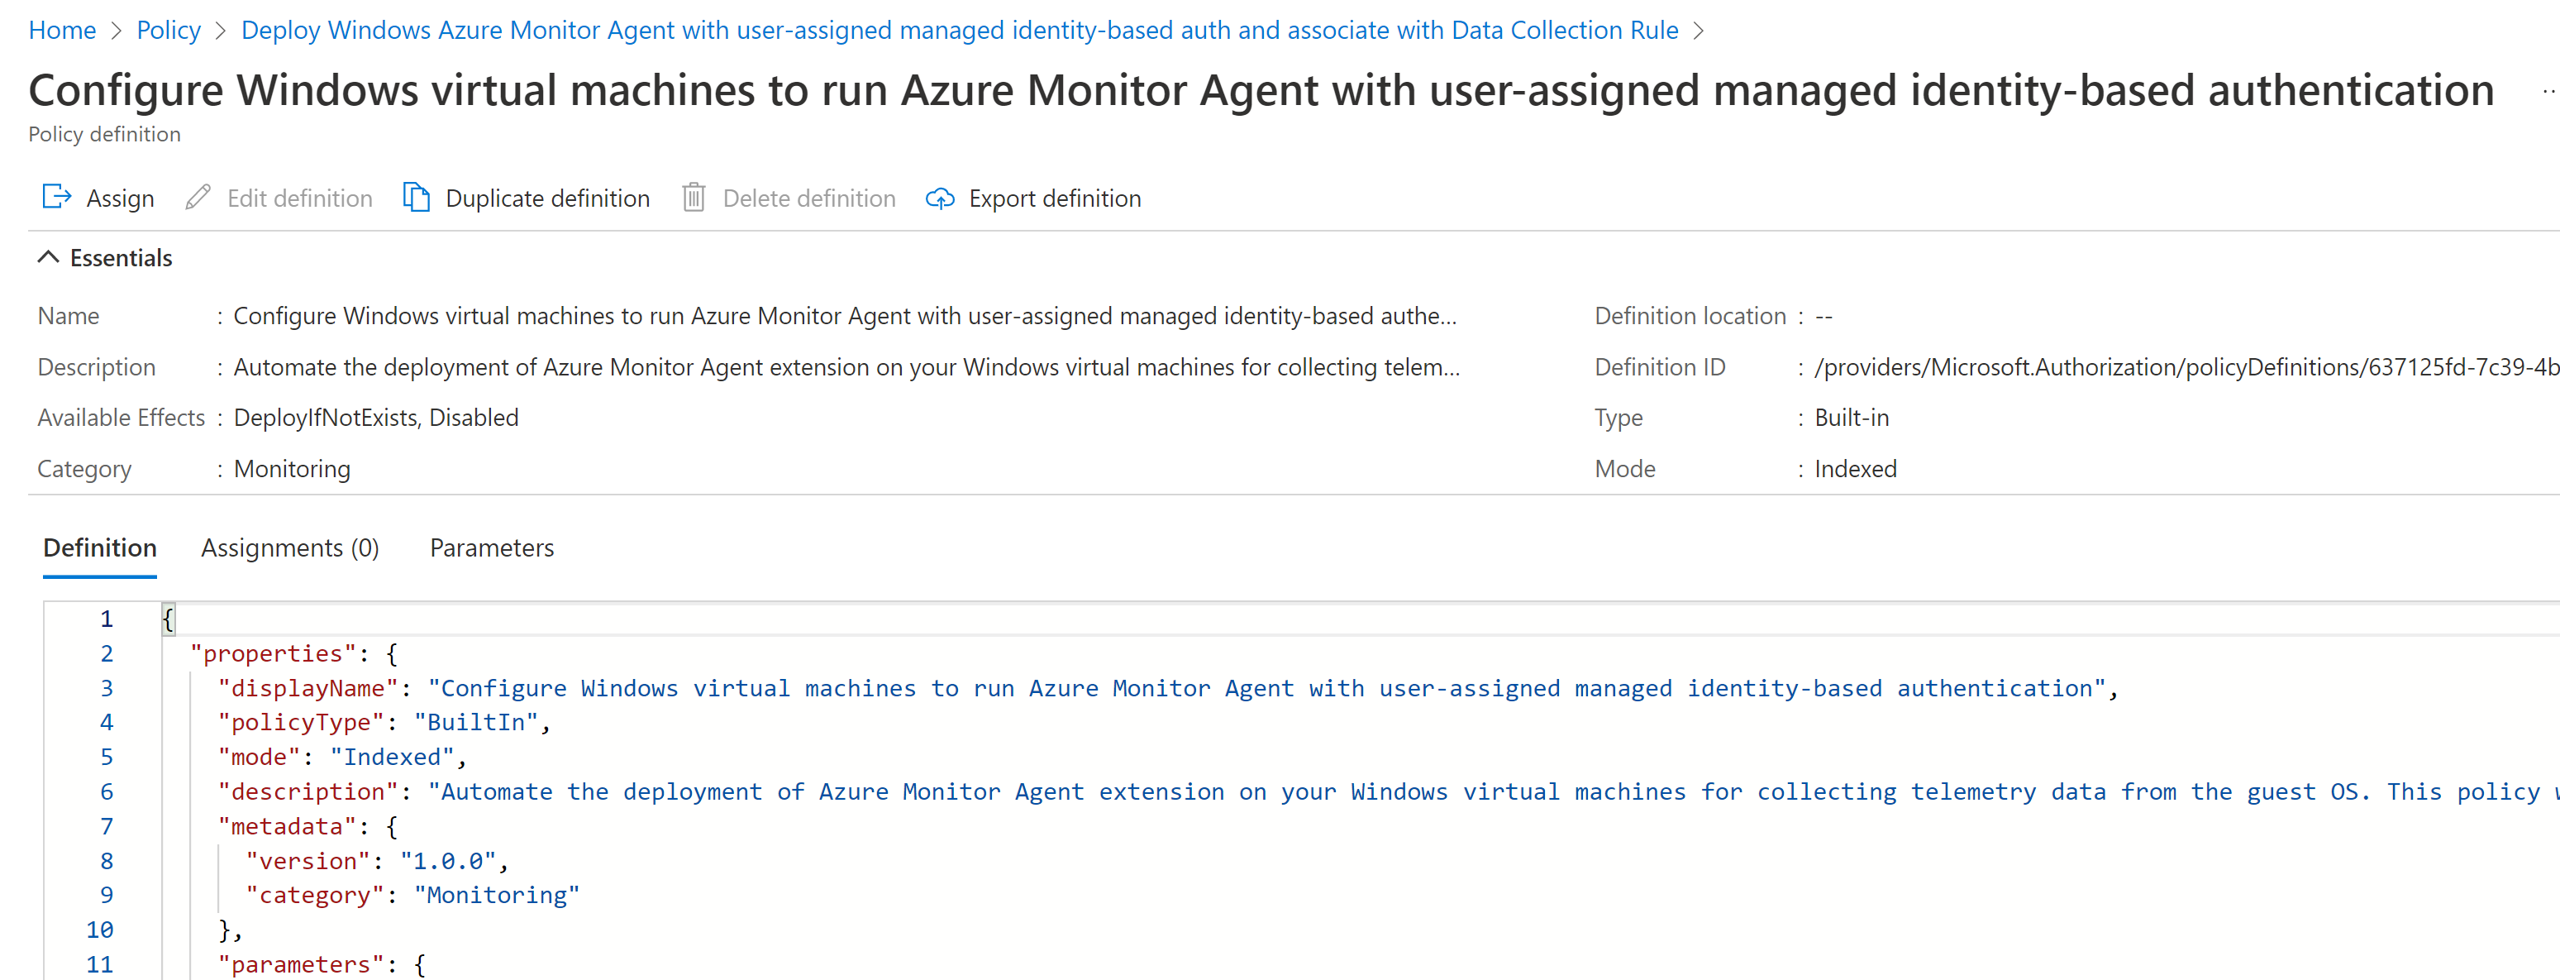 Частичный снимок экрана со страницы определений Политика Azure, в котором показаны политики, содержащиеся в инициативе по настройке агента Azure Monitor.